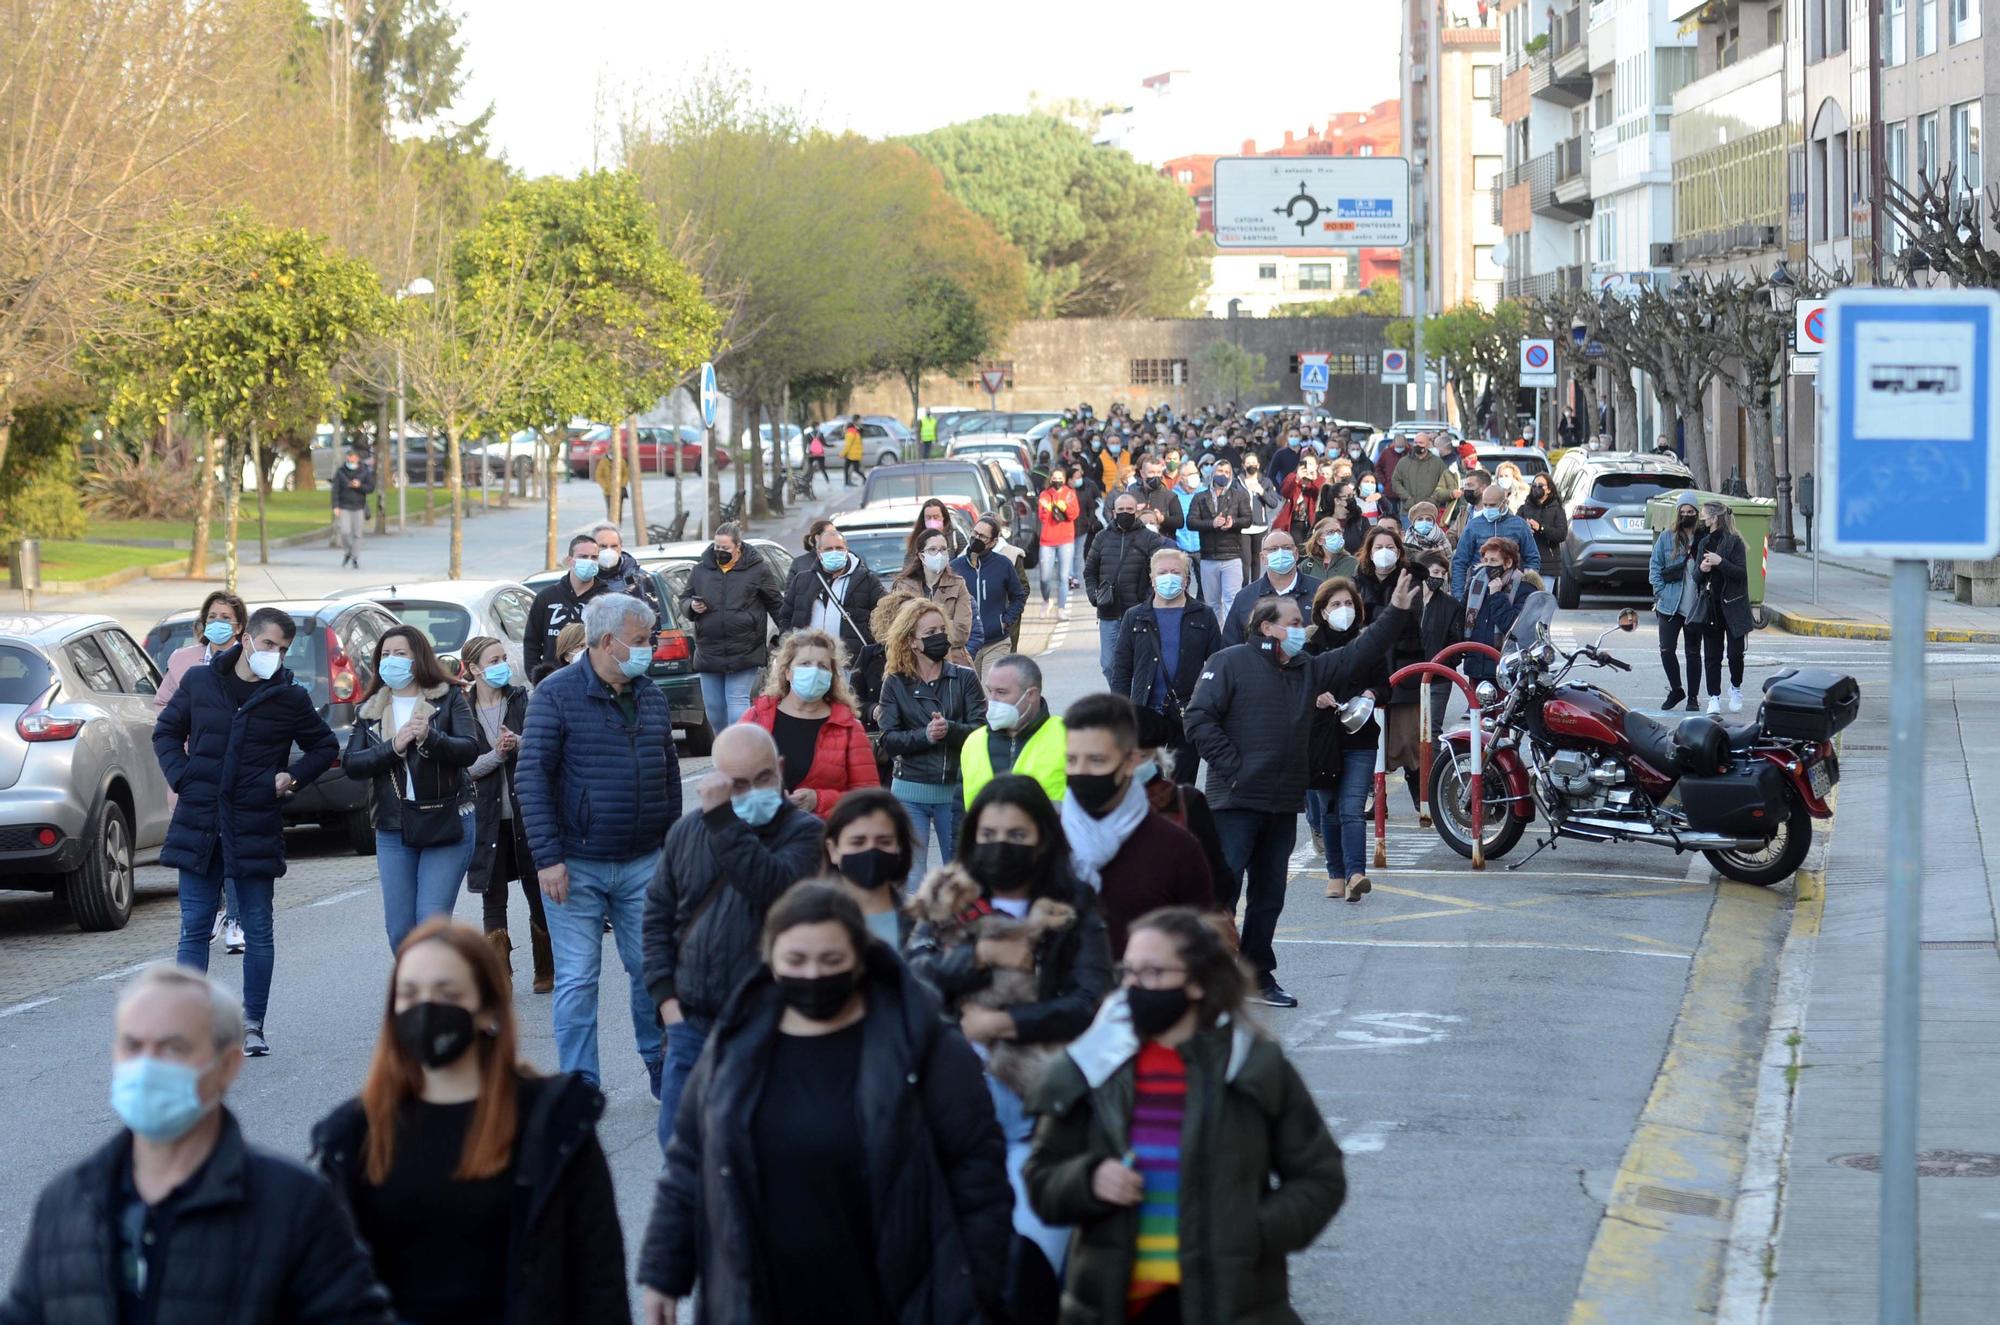 Manifestación masiva de la hostelería en Vilagarcía